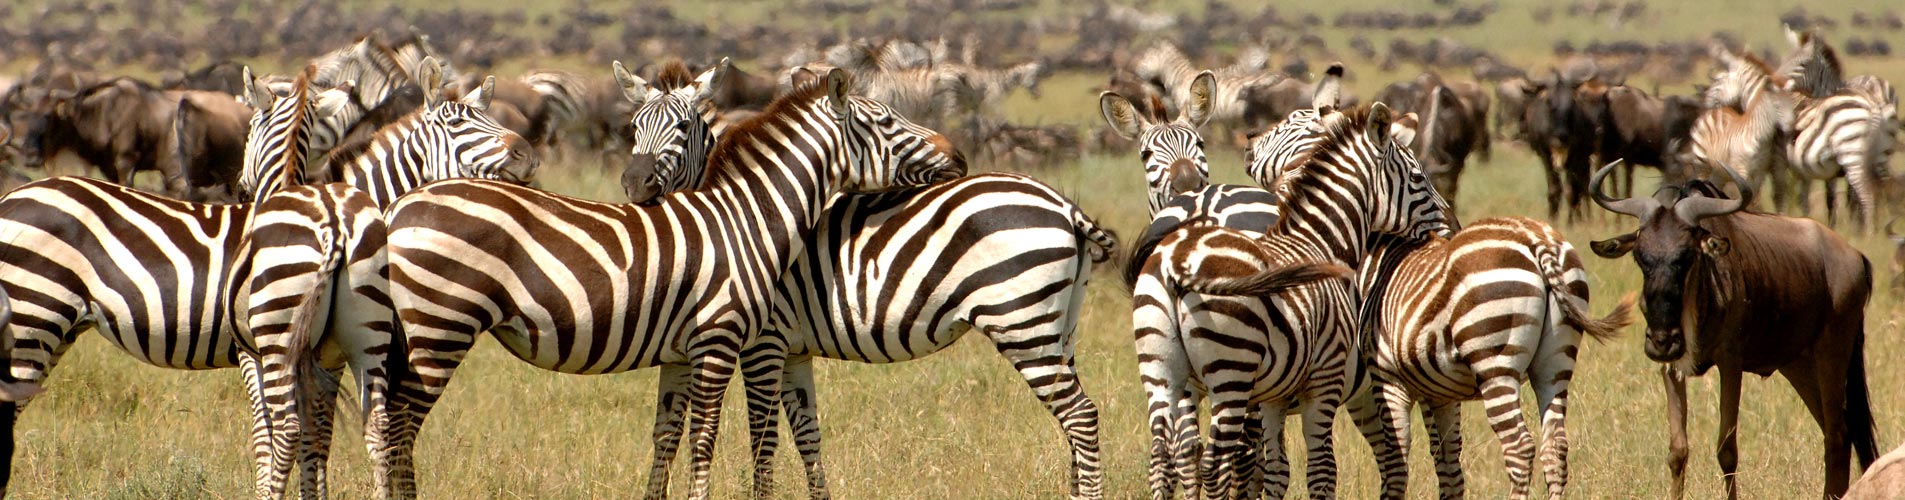 Tanzania Safaris, Zebras and Migration beginnings